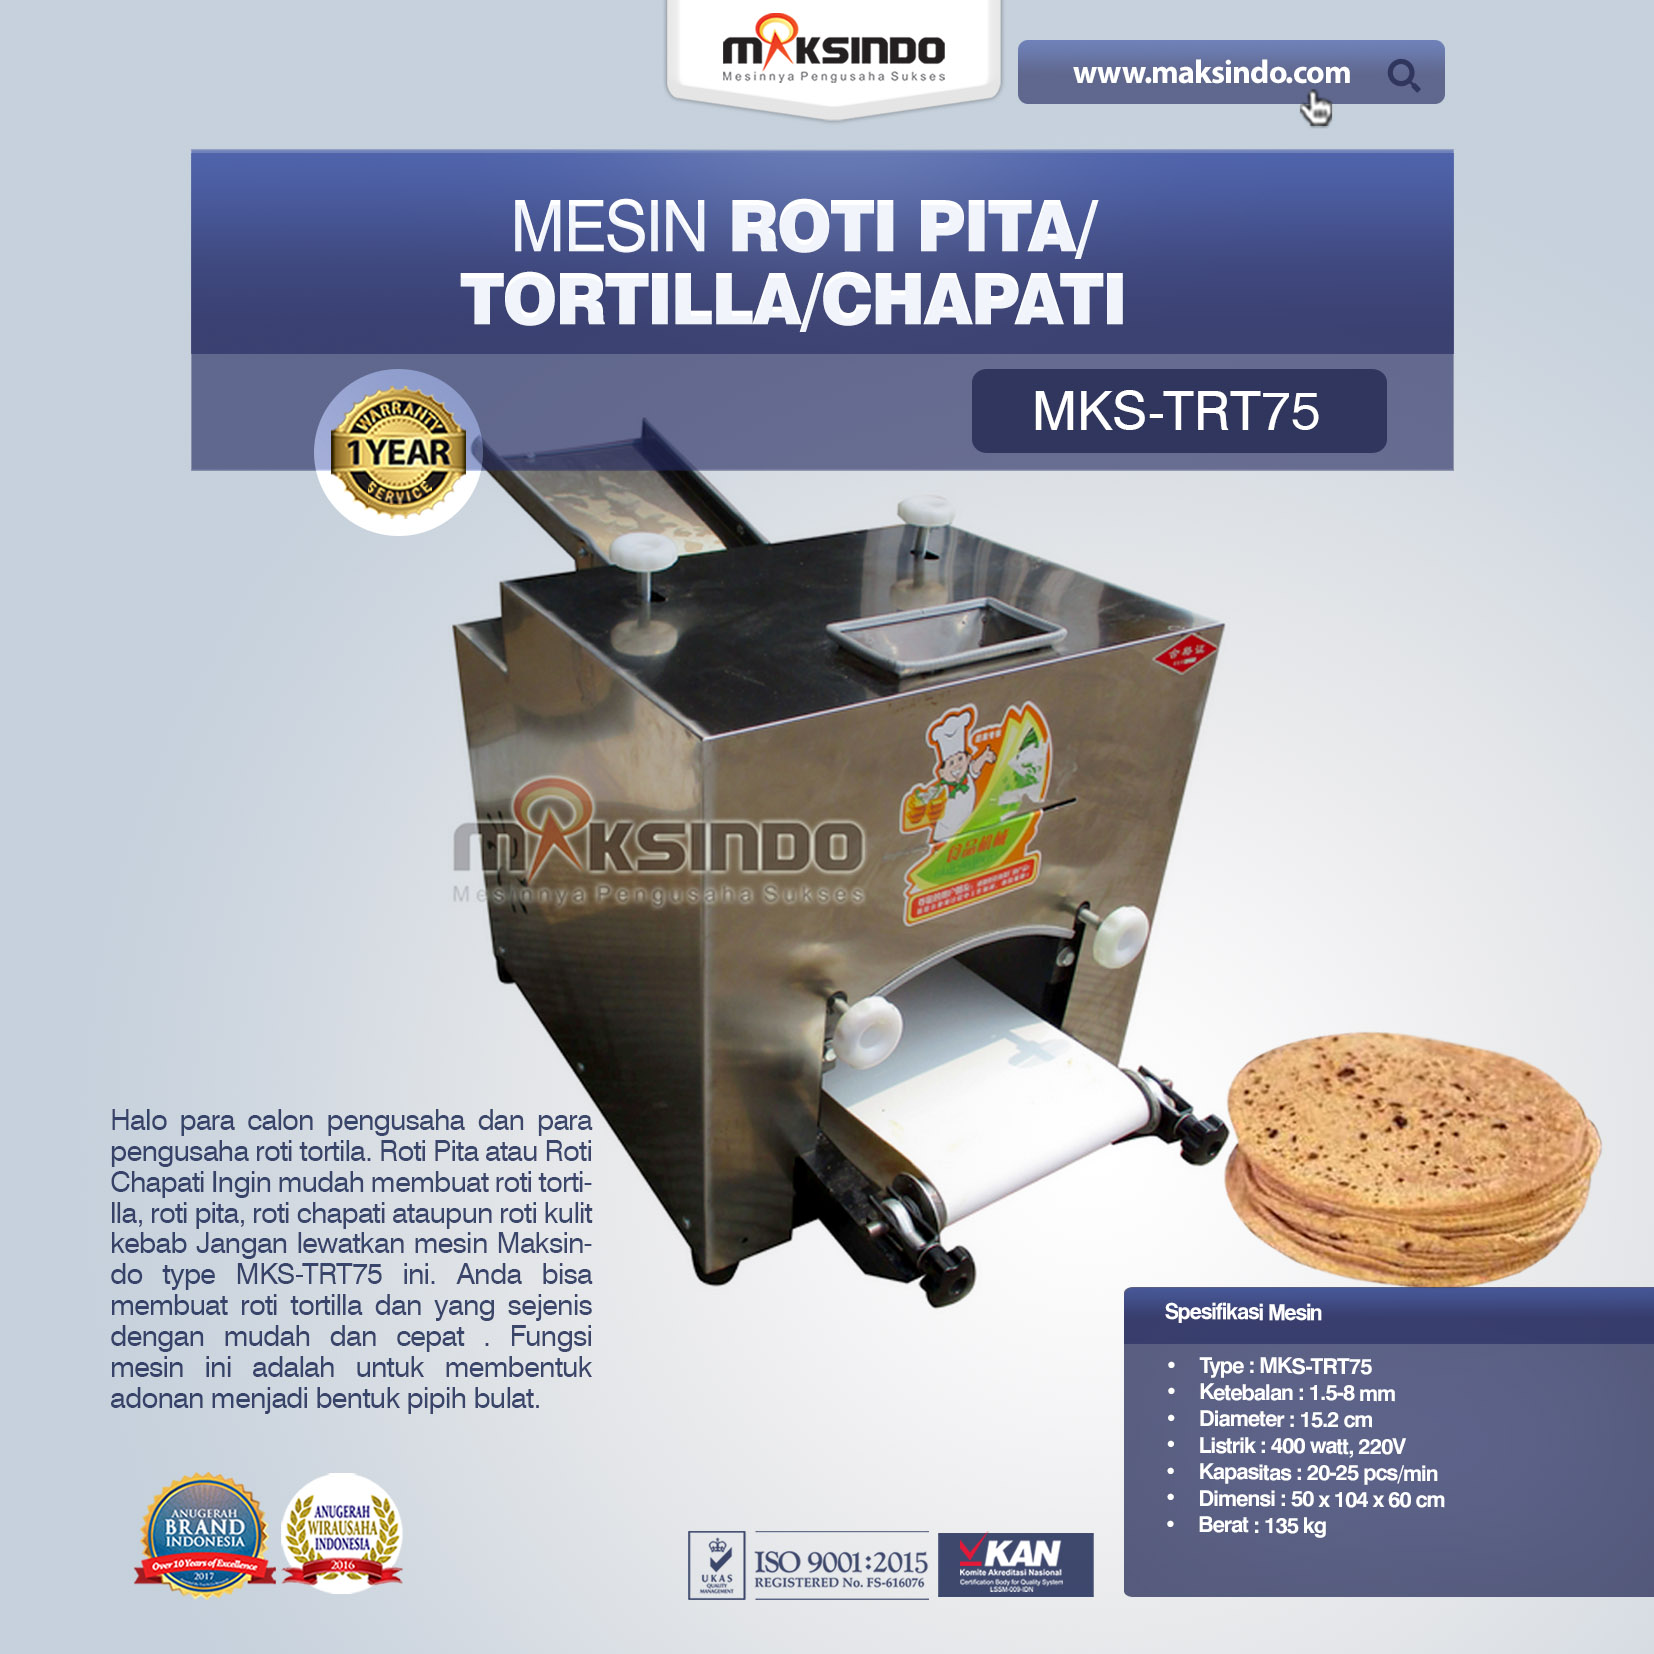 Jual Mesin Roti Pita/Tortilla/Chapati MKS-TRT75 Di Bogor